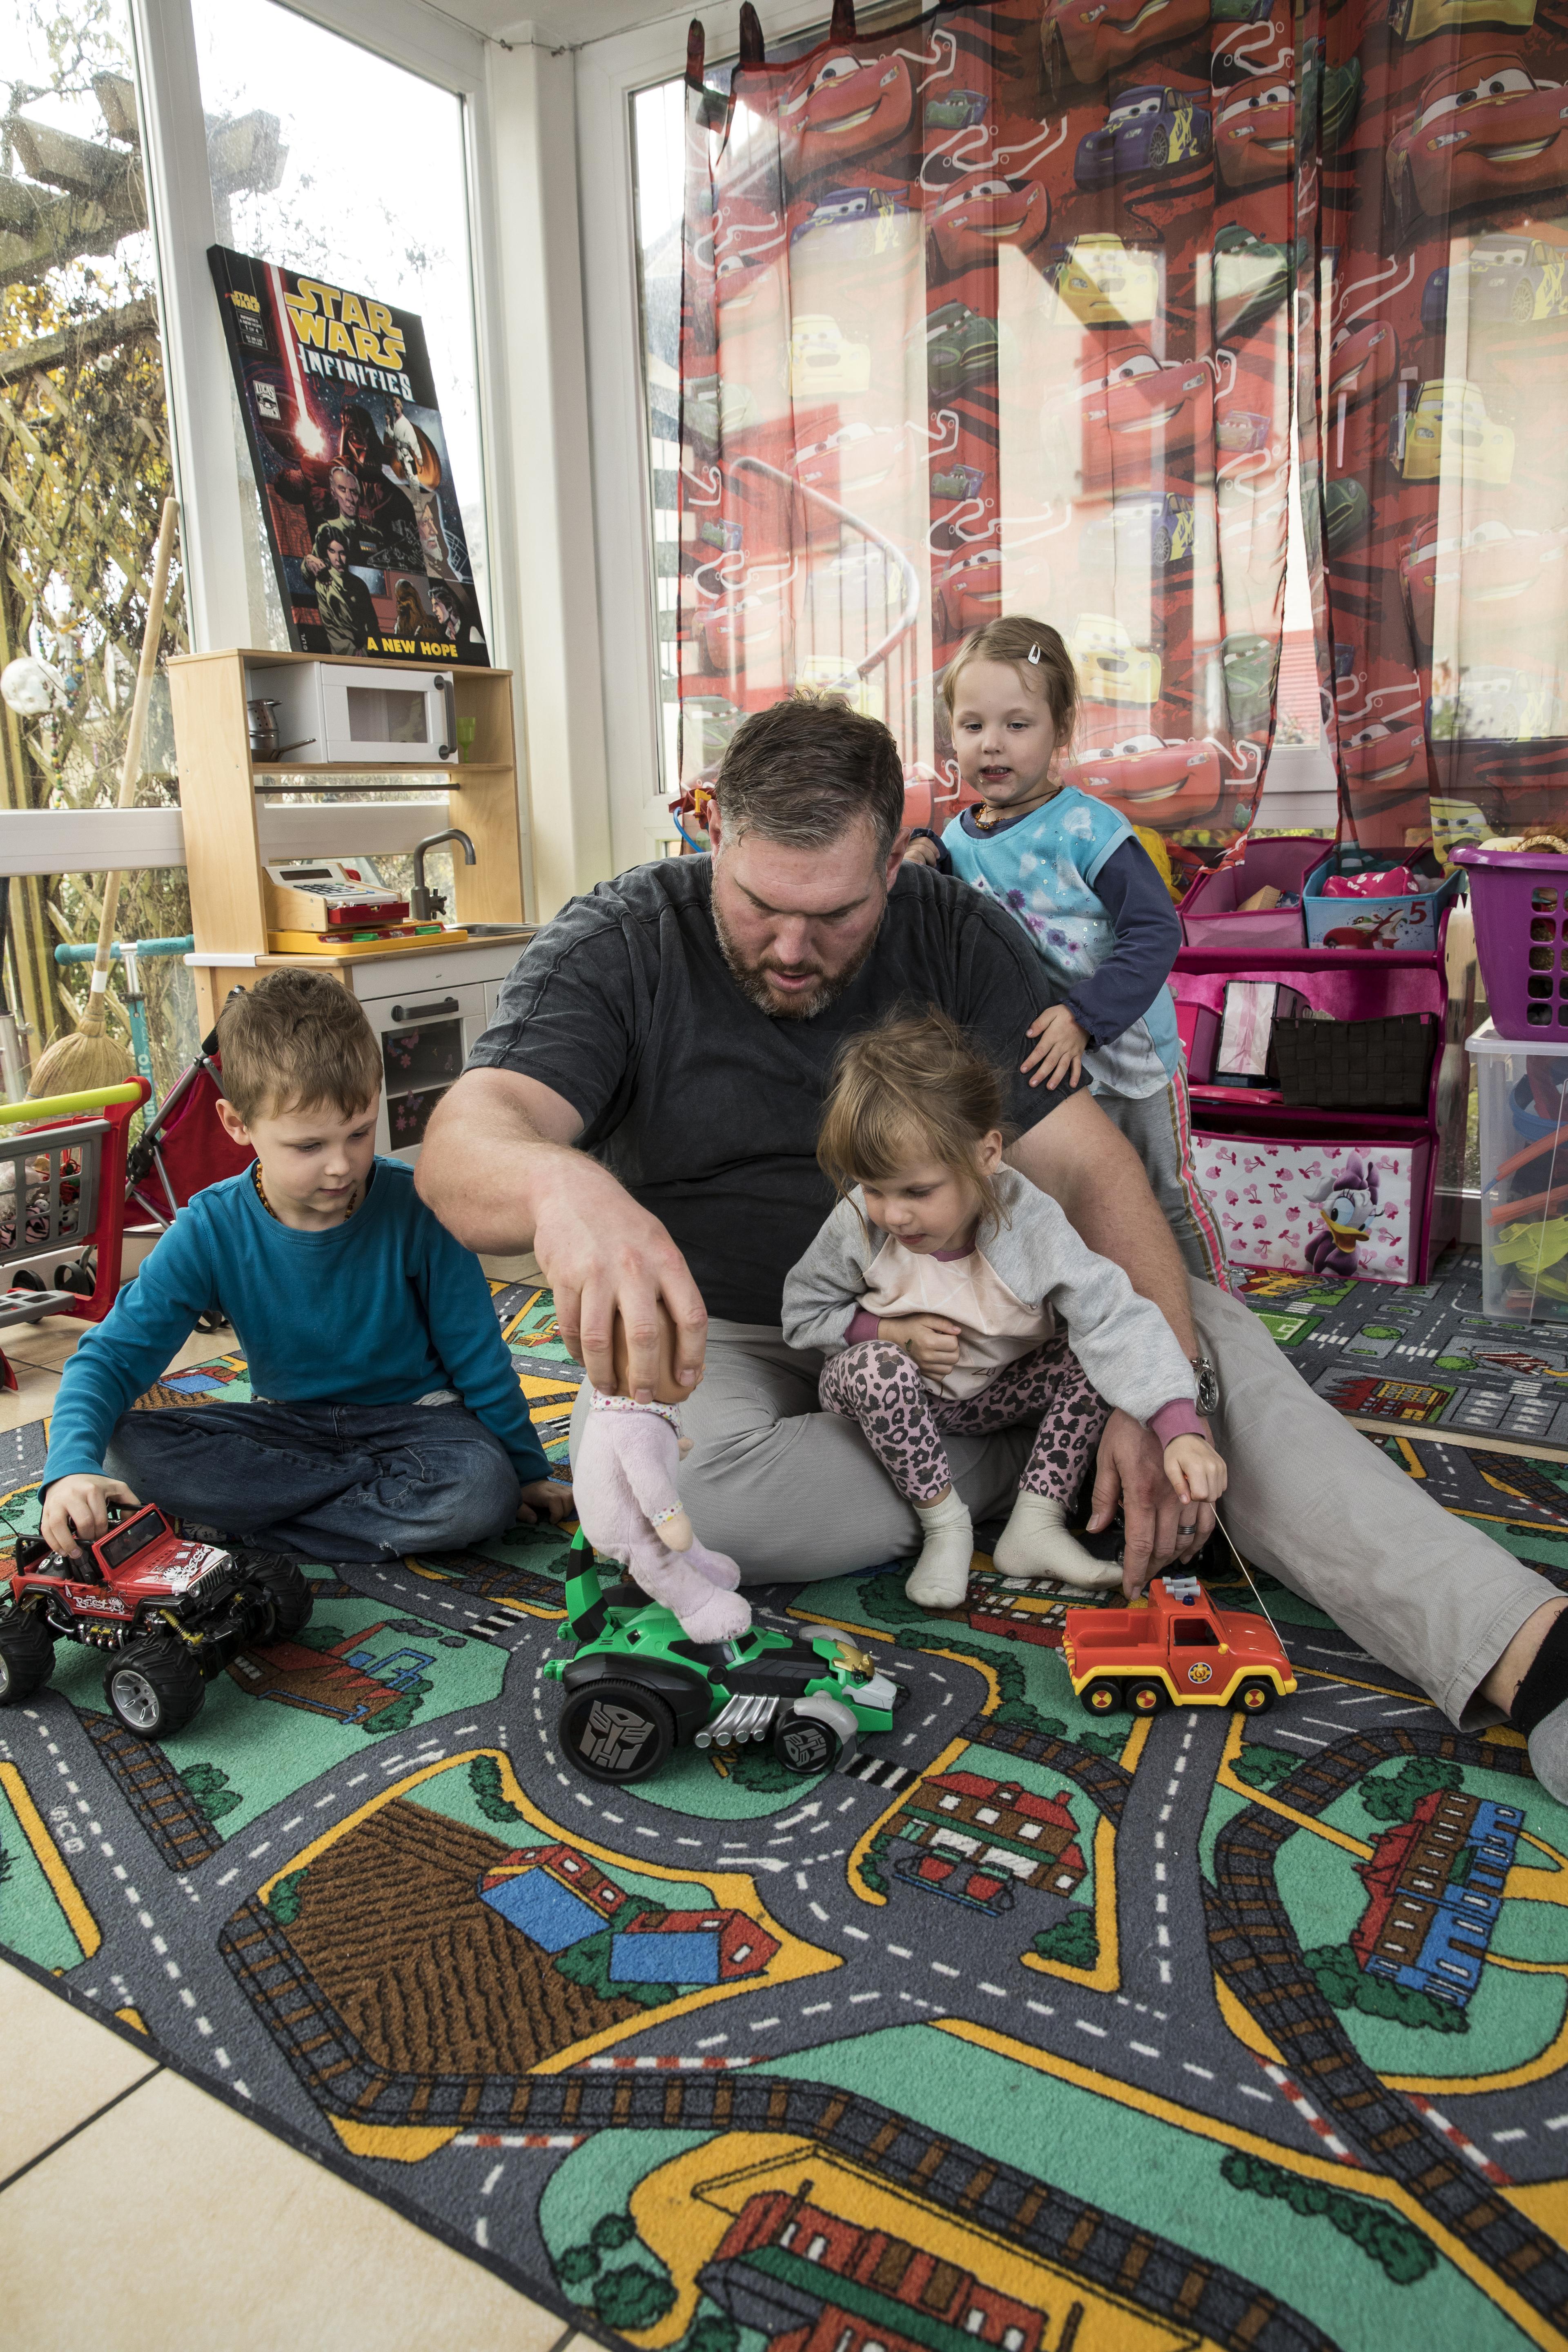 Christian Stucki, ambassadeur de la CRS, joue avec trois enfants assis par terre avec des voitures jouets.